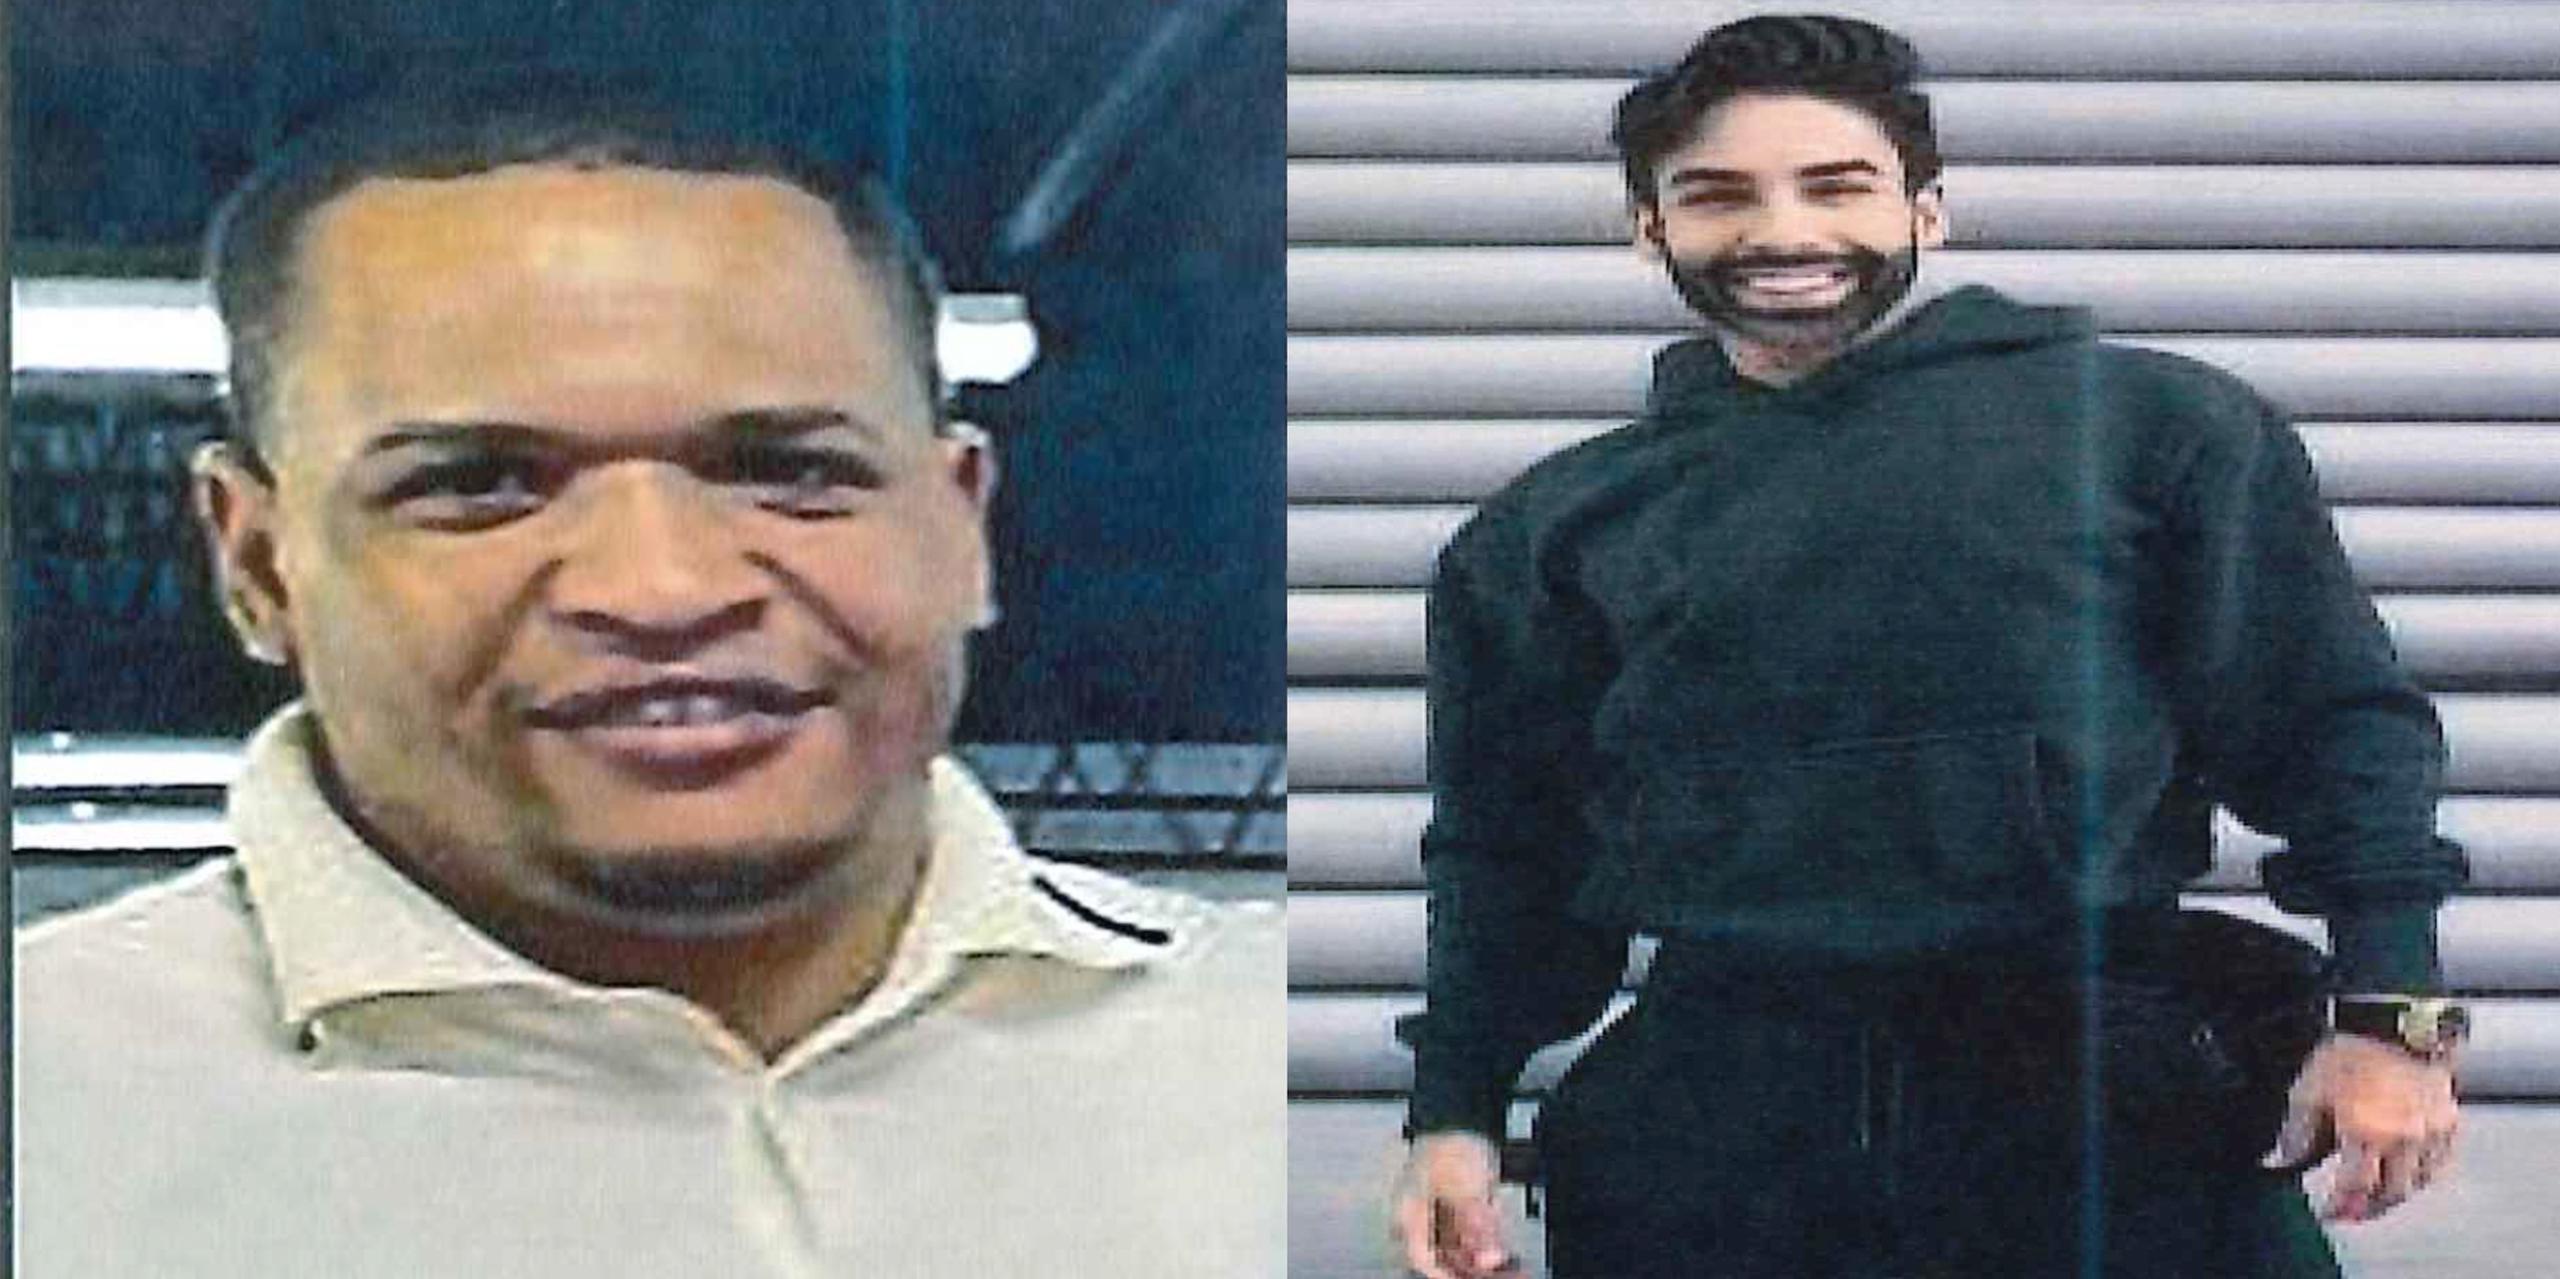 Las autoridades buscan a Yohauris Hiches Frías (izq.) quien está desaparecido desde septiembre, mientras que desde julio se desconoce el paradero de Eddie Morales Rodríguez, quien estaba de visita en la isla.